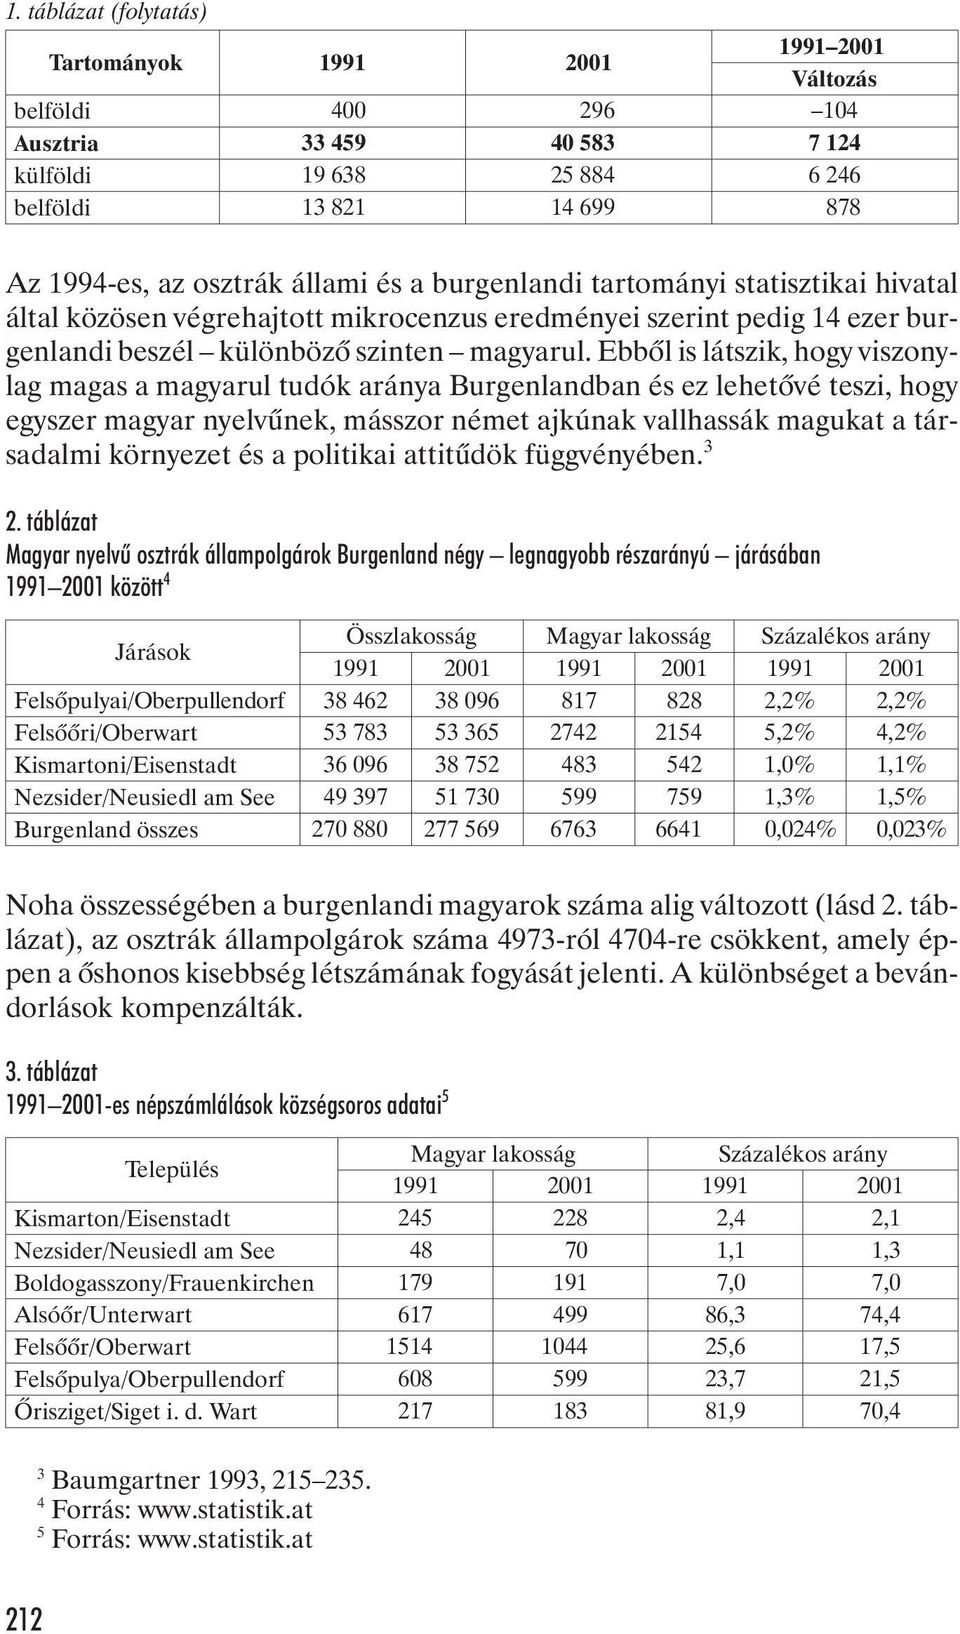 Ebbõl is látszik, hogy viszonylag magas a magyarul tudók aránya Burgenlandban és ez lehetõvé teszi, hogy egyszer magyar nyelvûnek, másszor német ajkúnak vallhassák magukat a társadalmi környezet és a